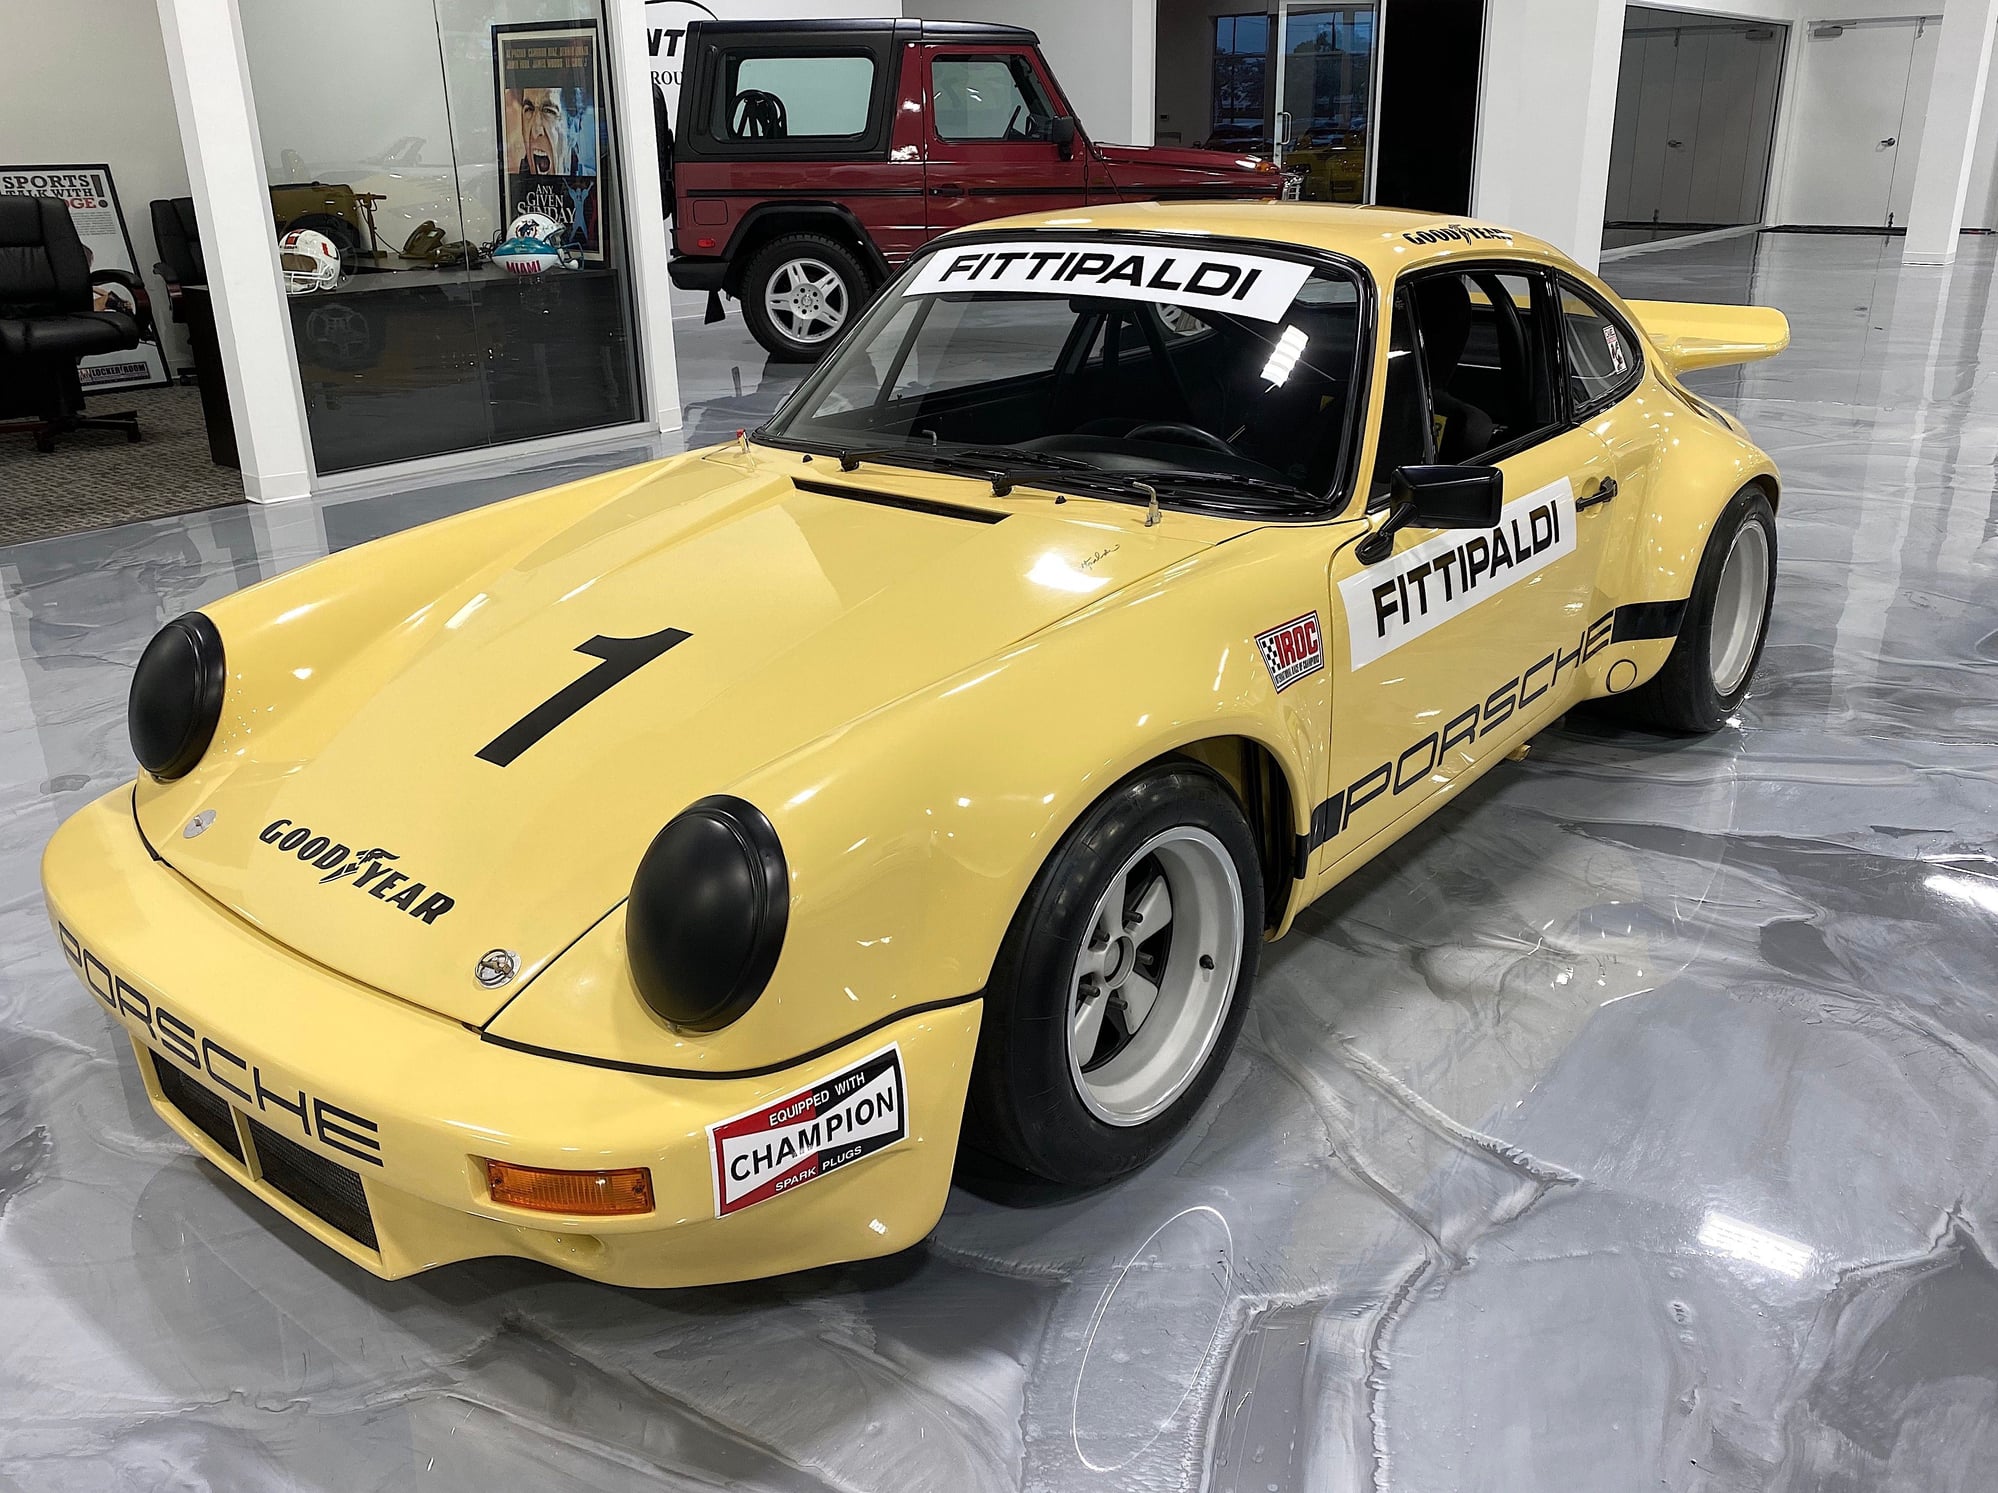 1973 Porsche 911 - 1973 Porsche IROC RSR - Fittipaldi car - Used - VIN 9114600100 - 225 Miles - 6 cyl - 2WD - Manual - Coupe - Yellow - Boca Raton, FL 33431, United States